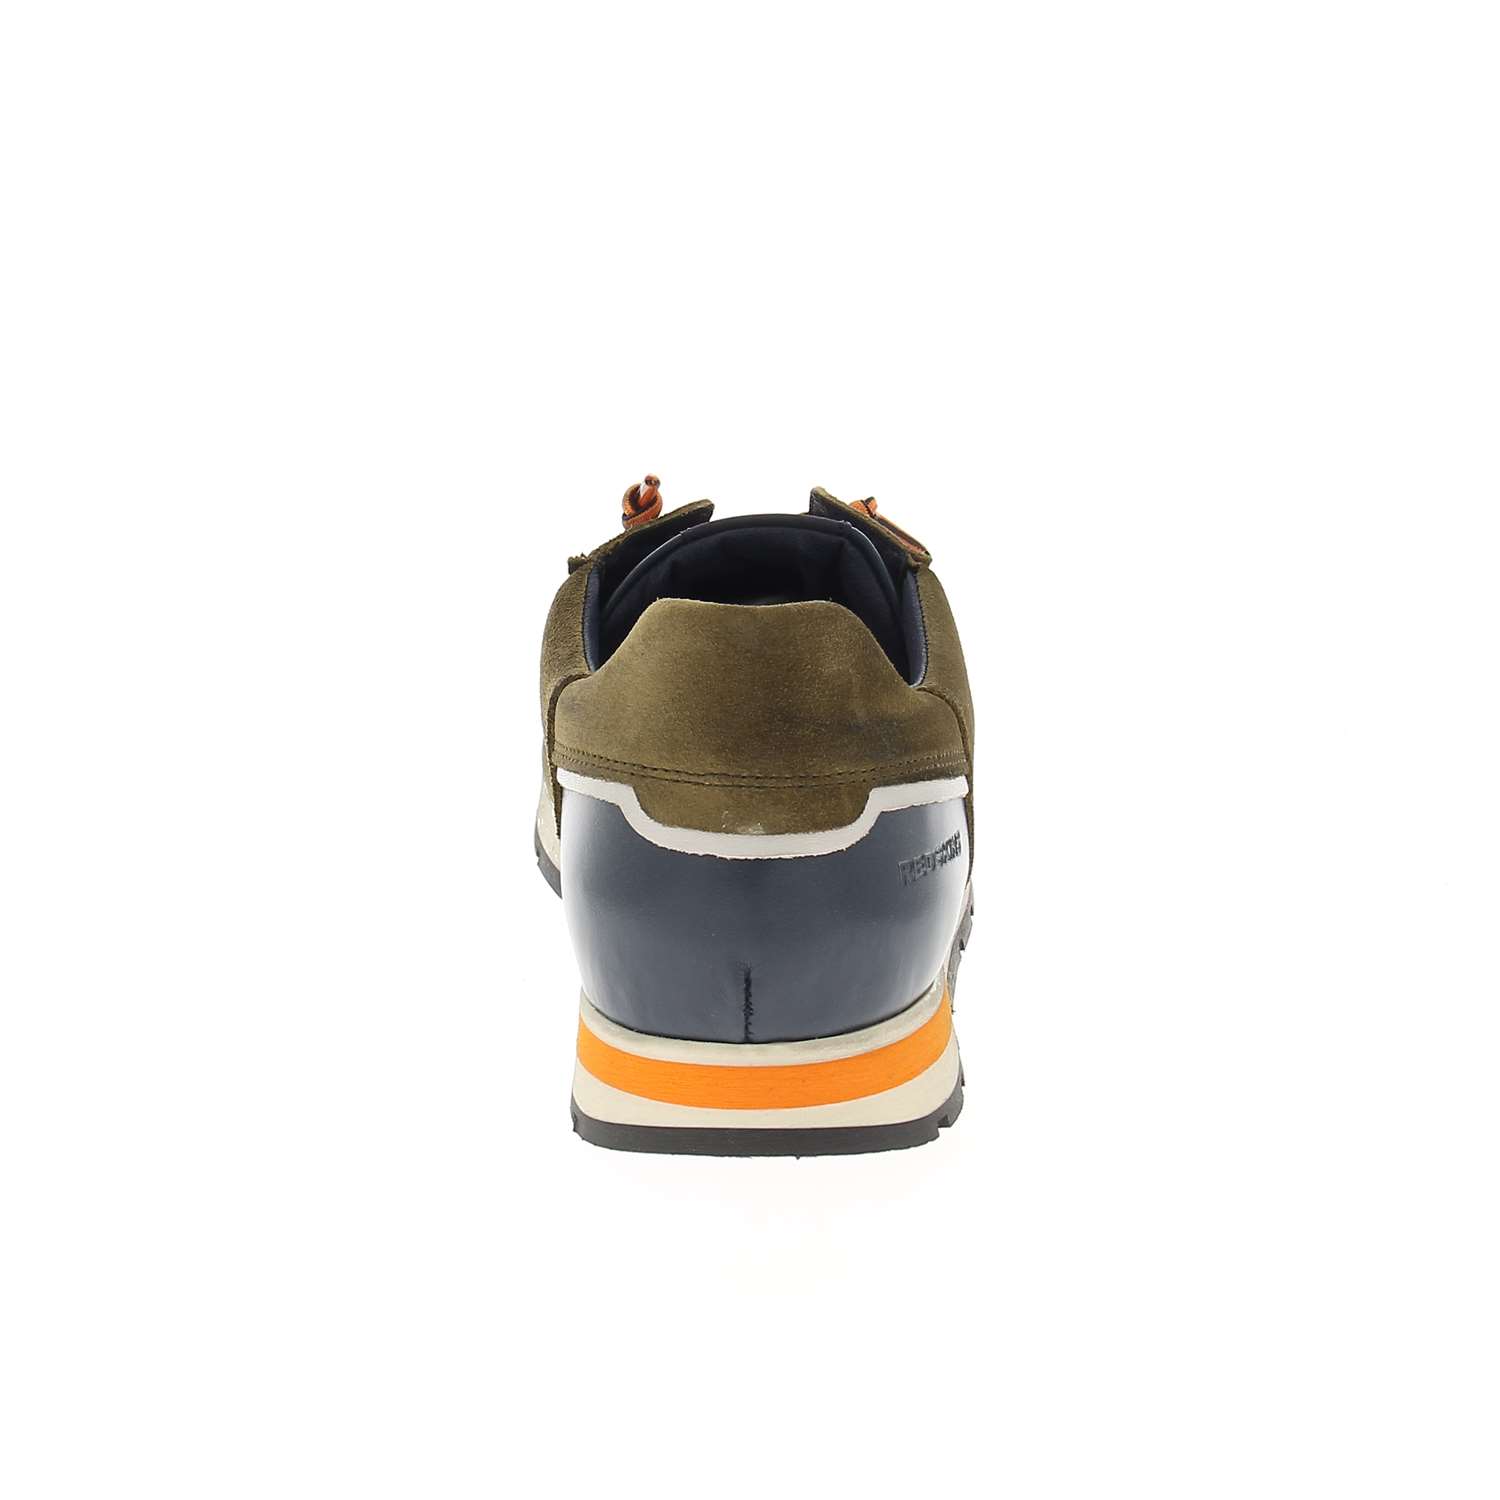 04 - STITCH - CLEON - Chaussures à lacets - Croûte de cuir